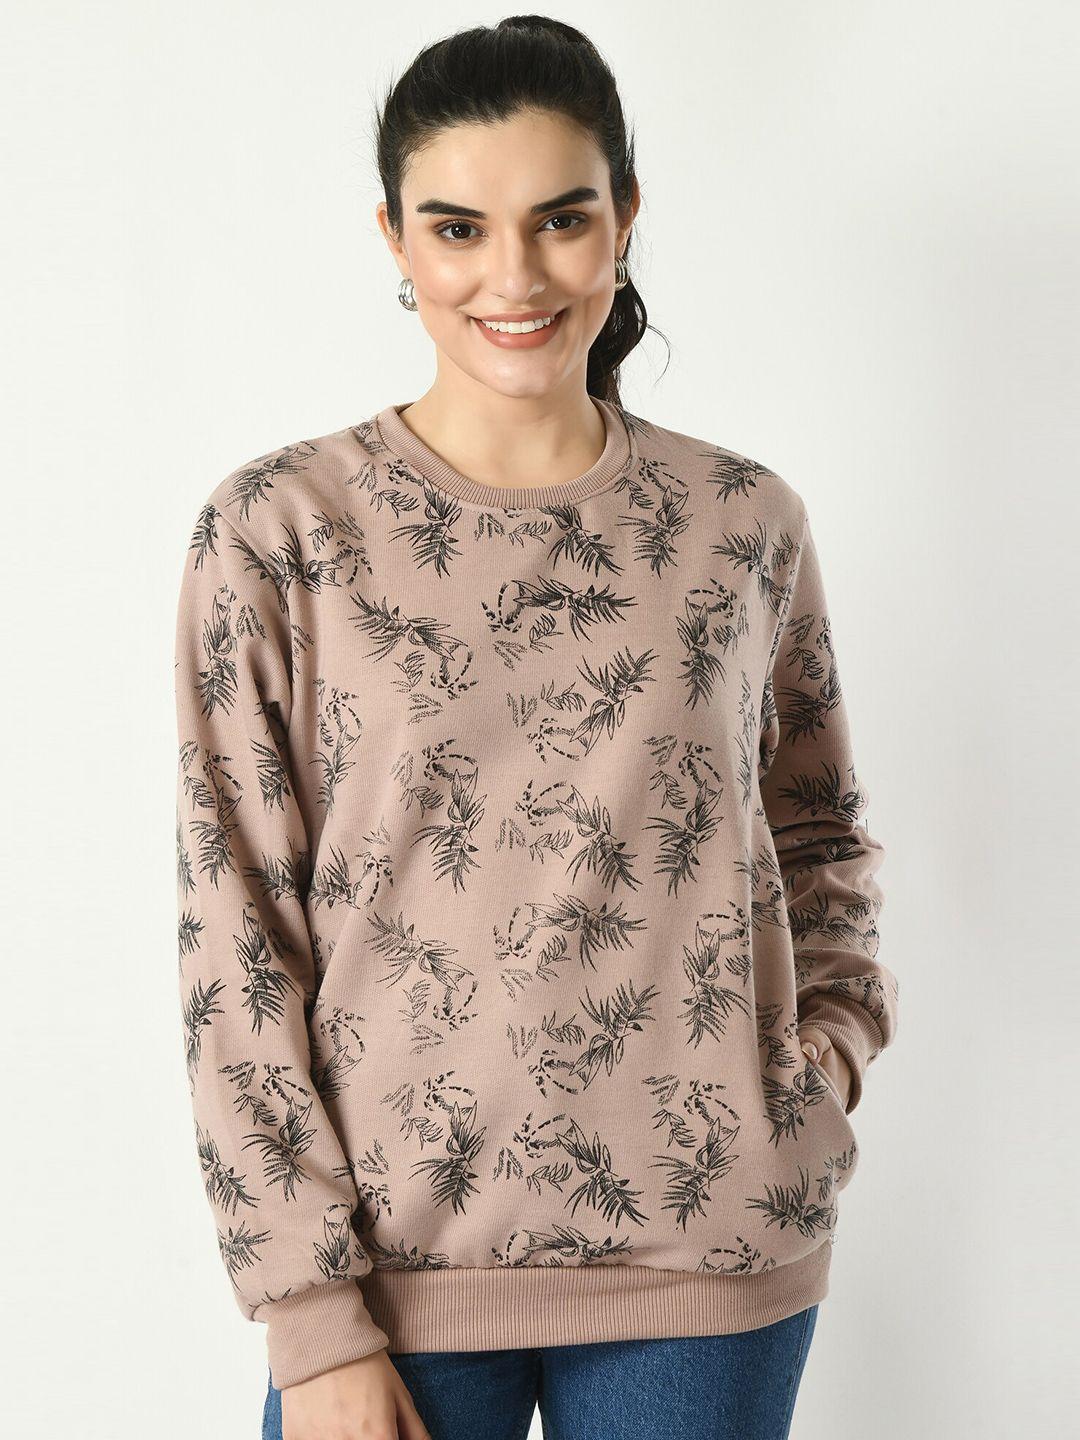 baesd floral printed long sleeves fleece sweatshirt